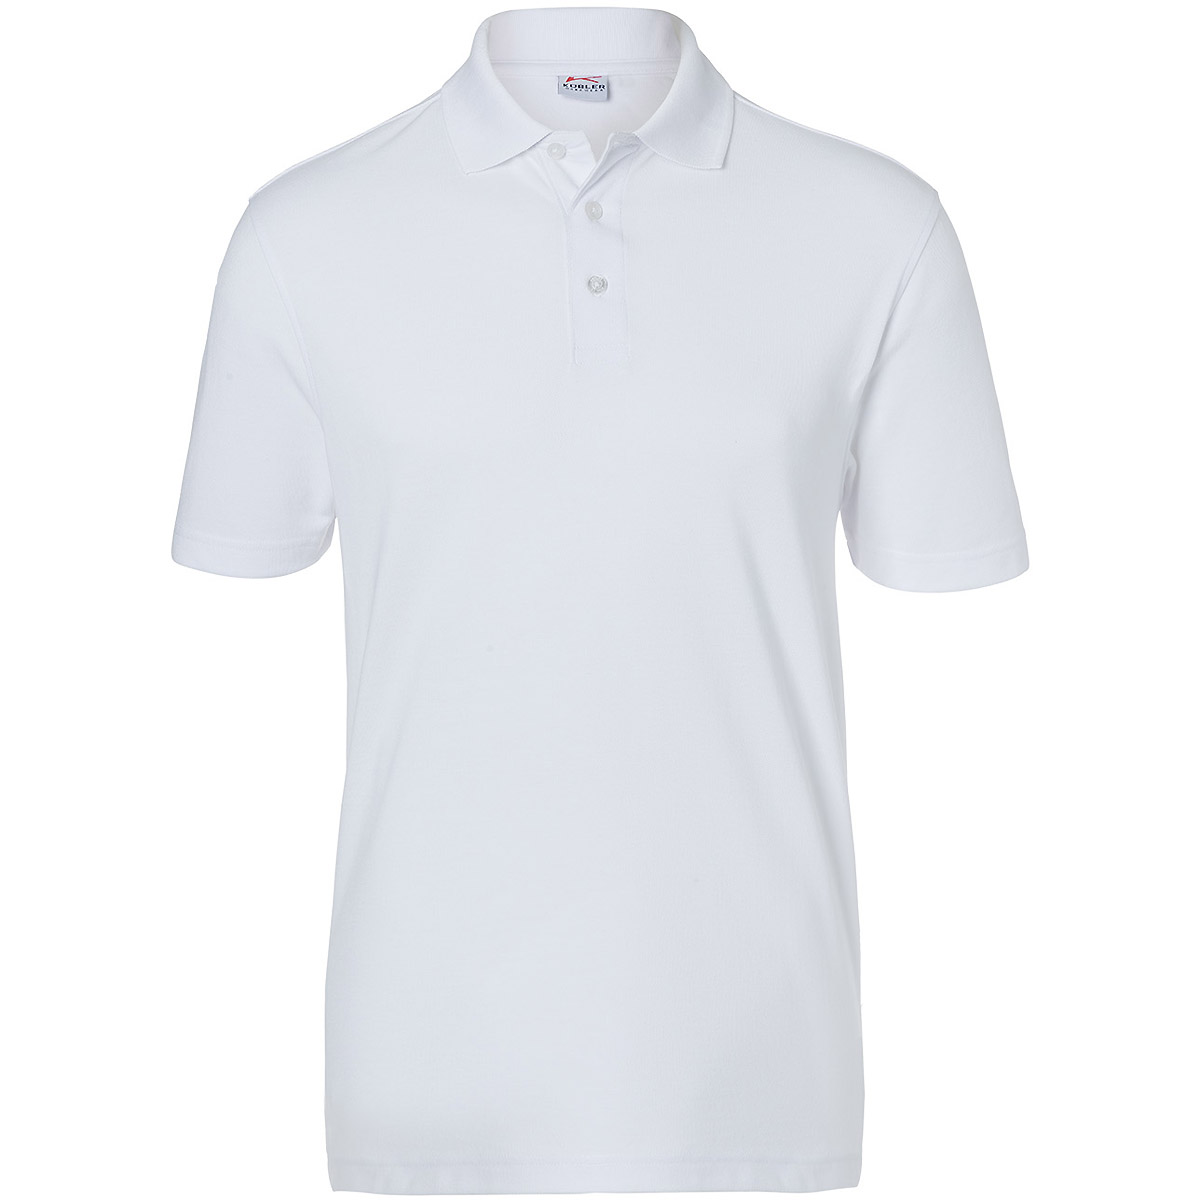 KÜBLER SHIRTS Polo | Poloshirts | Pullover & Shirts | Arbeitskleidung |  Arbeitsschutz | tuulzone